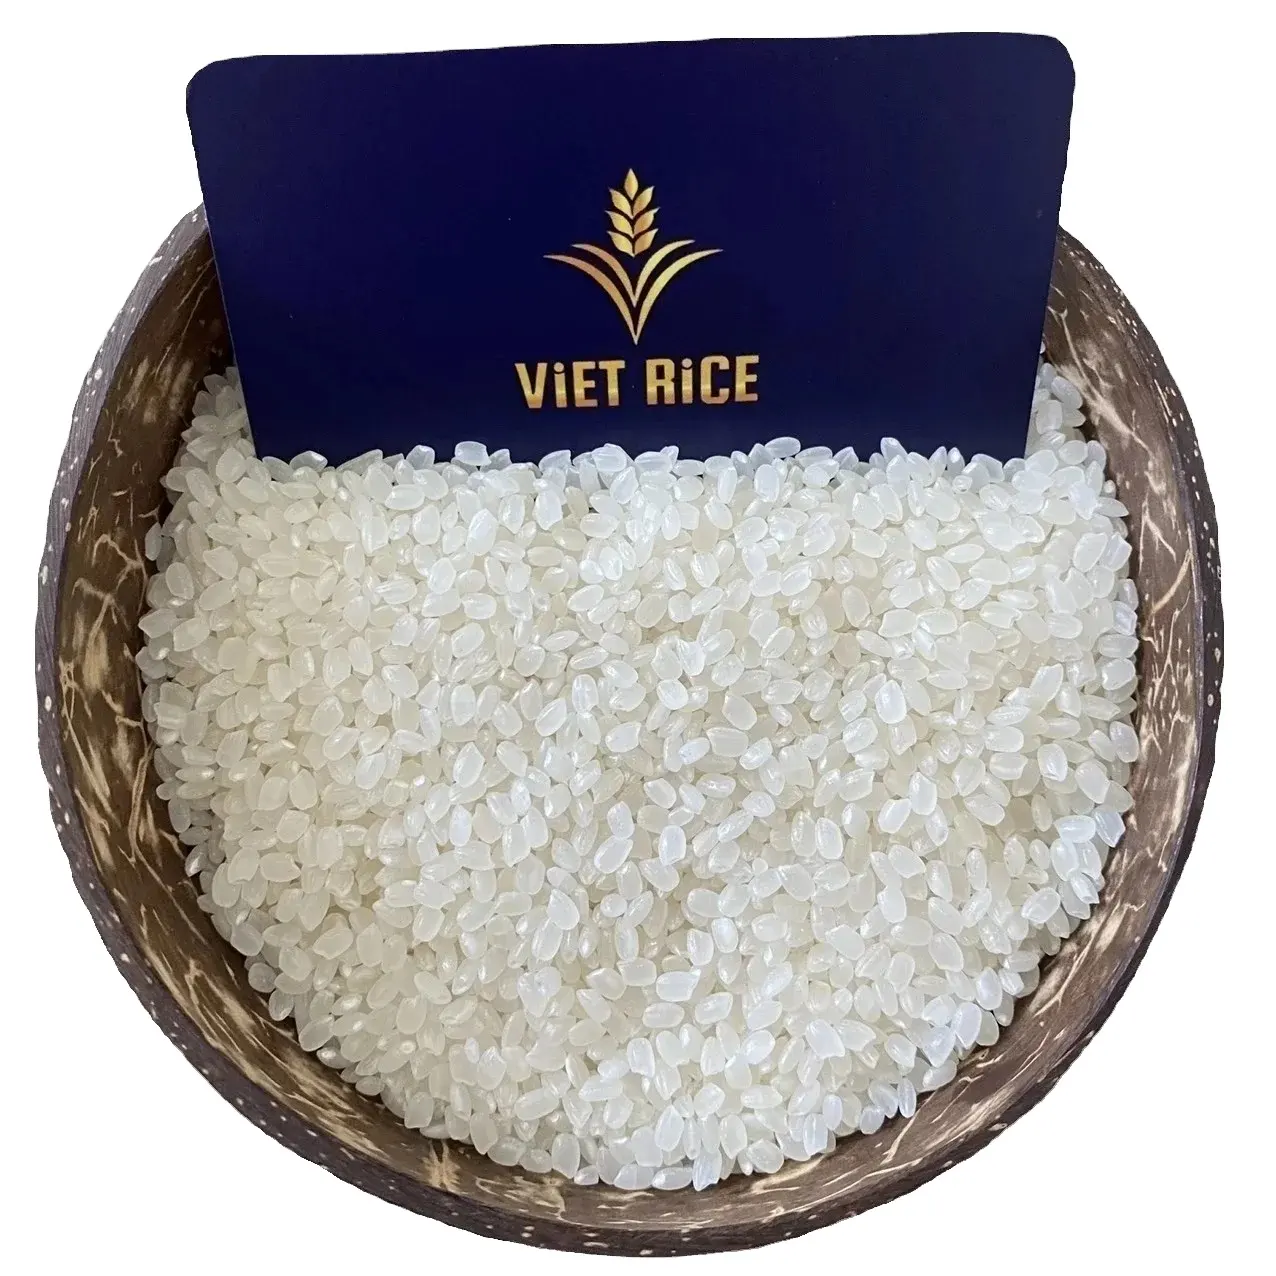 Arroz japonés de Vietnam 5% arroz blanco de grano redondo roto empaquetado en materiales respetuosos con el medio ambiente Whatsapp + 84 765 632 065